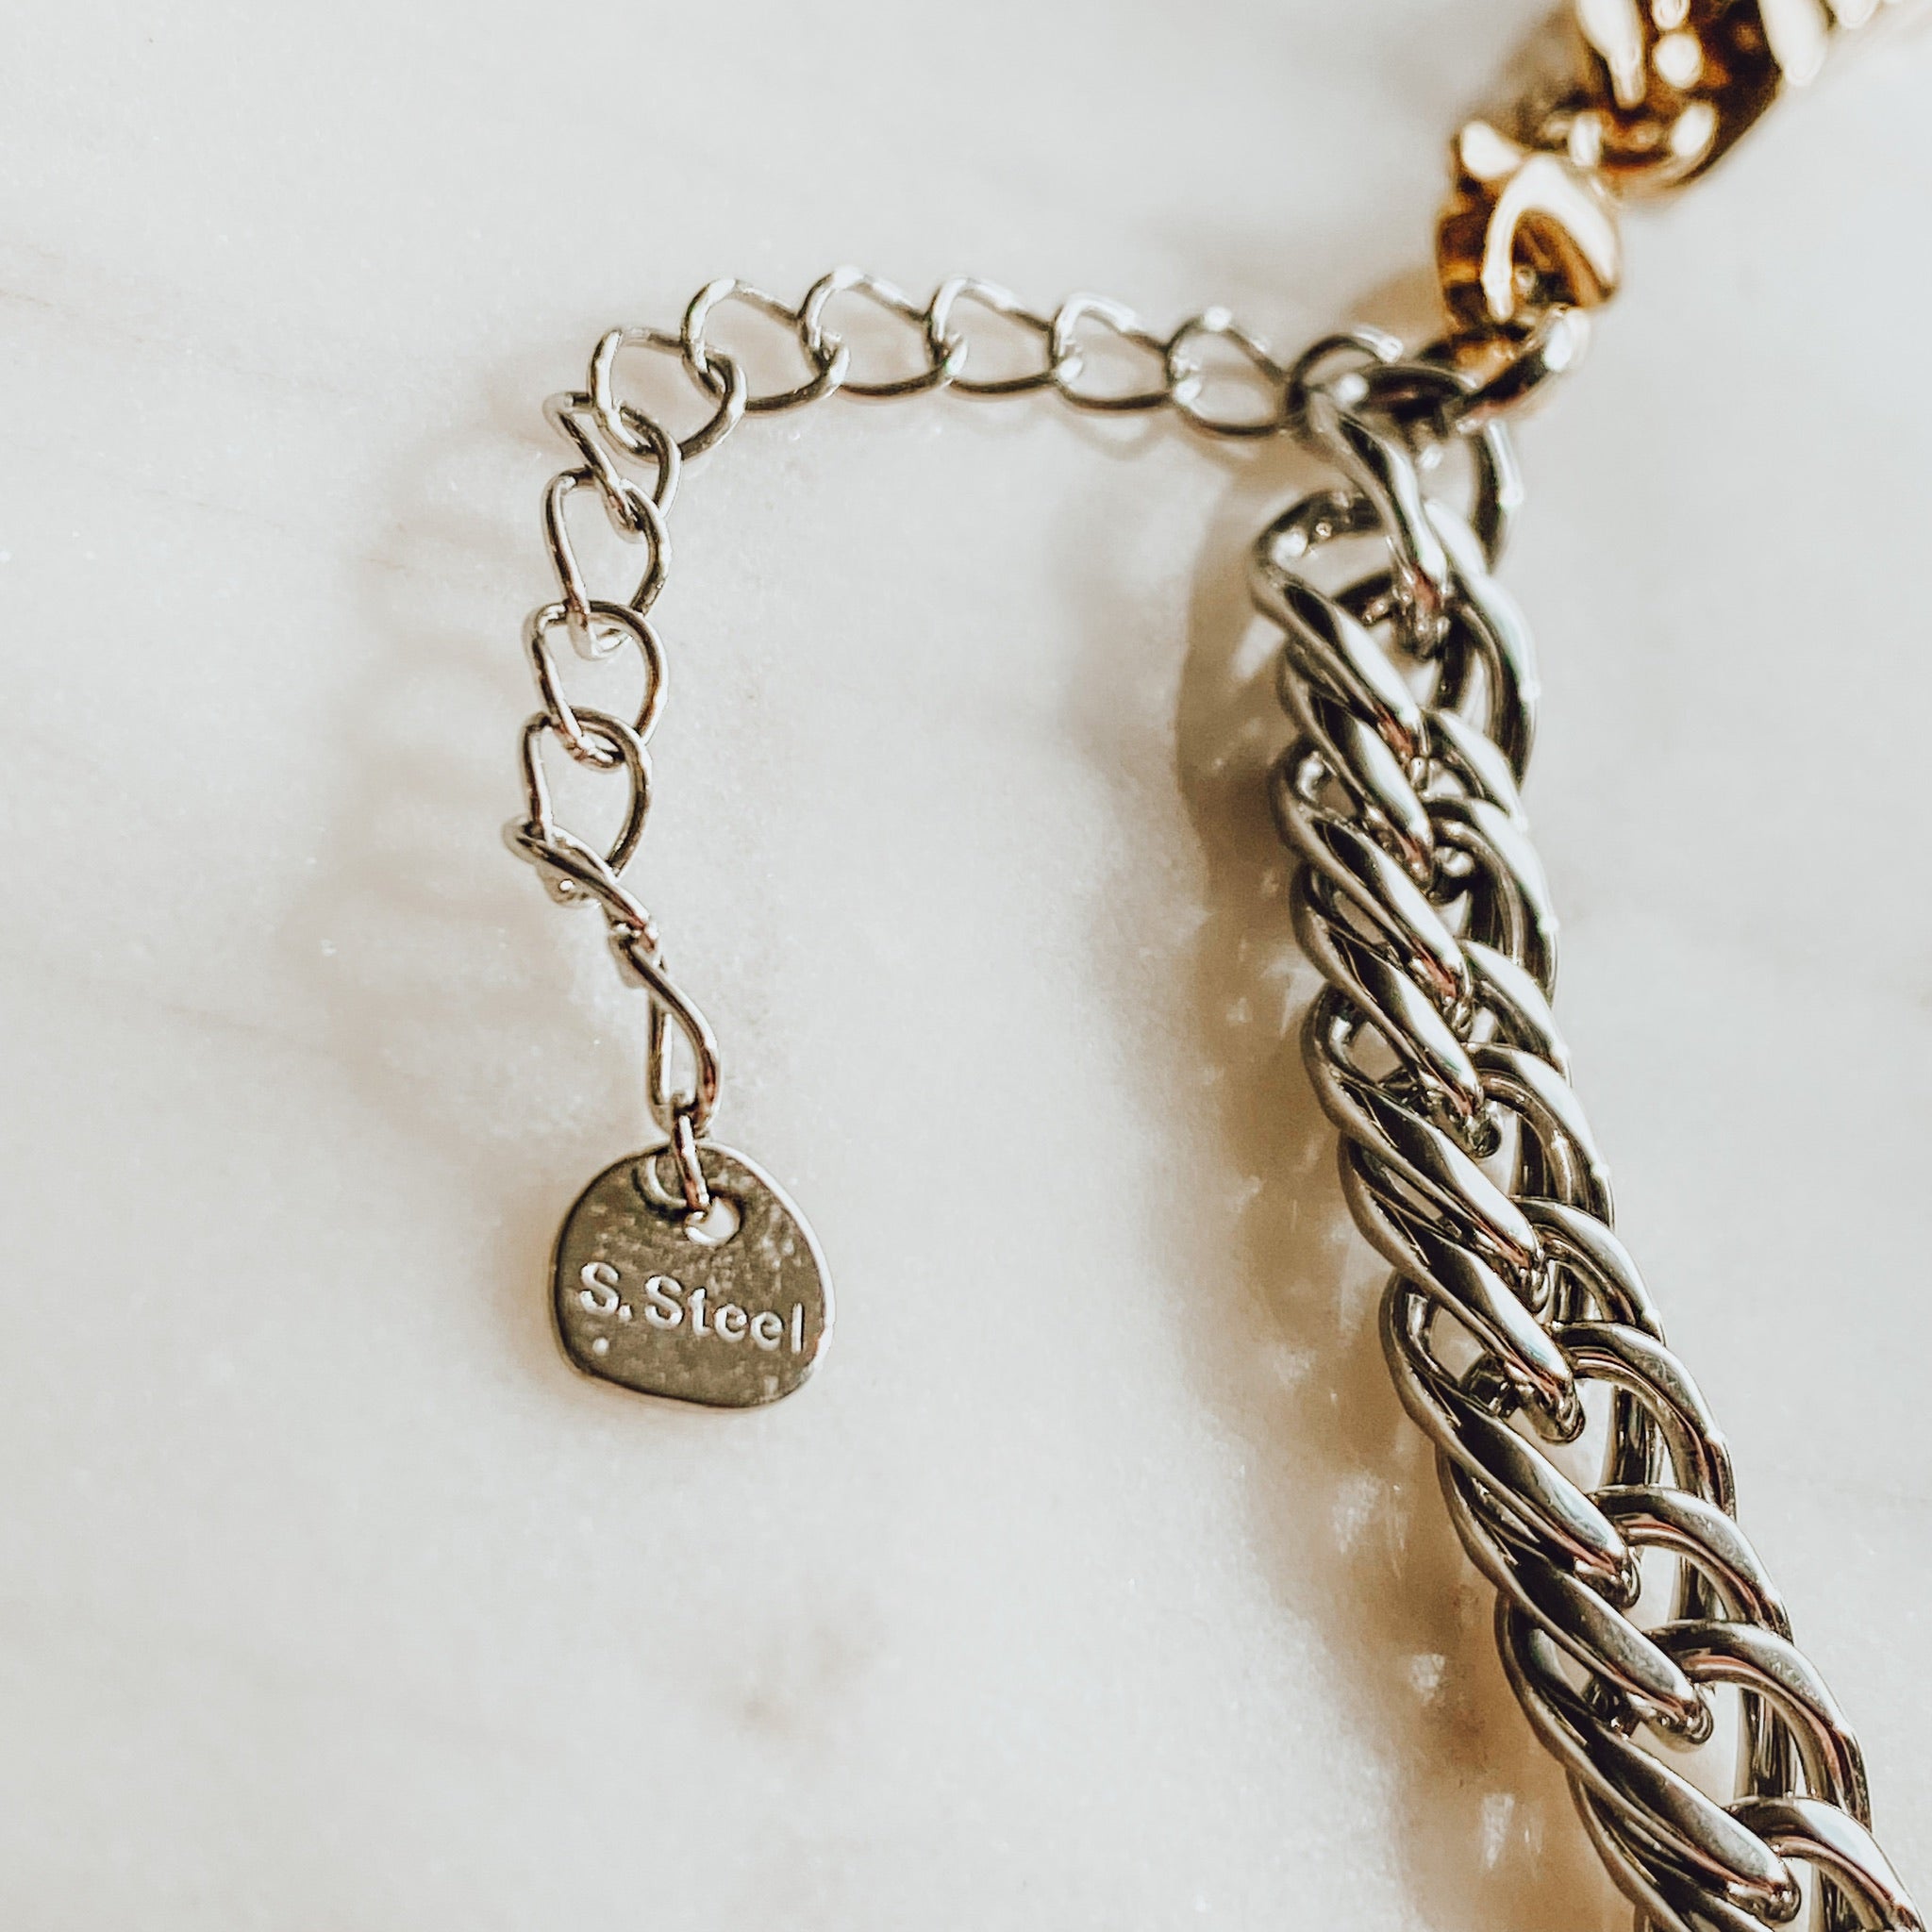 Miller Chain Bracelet